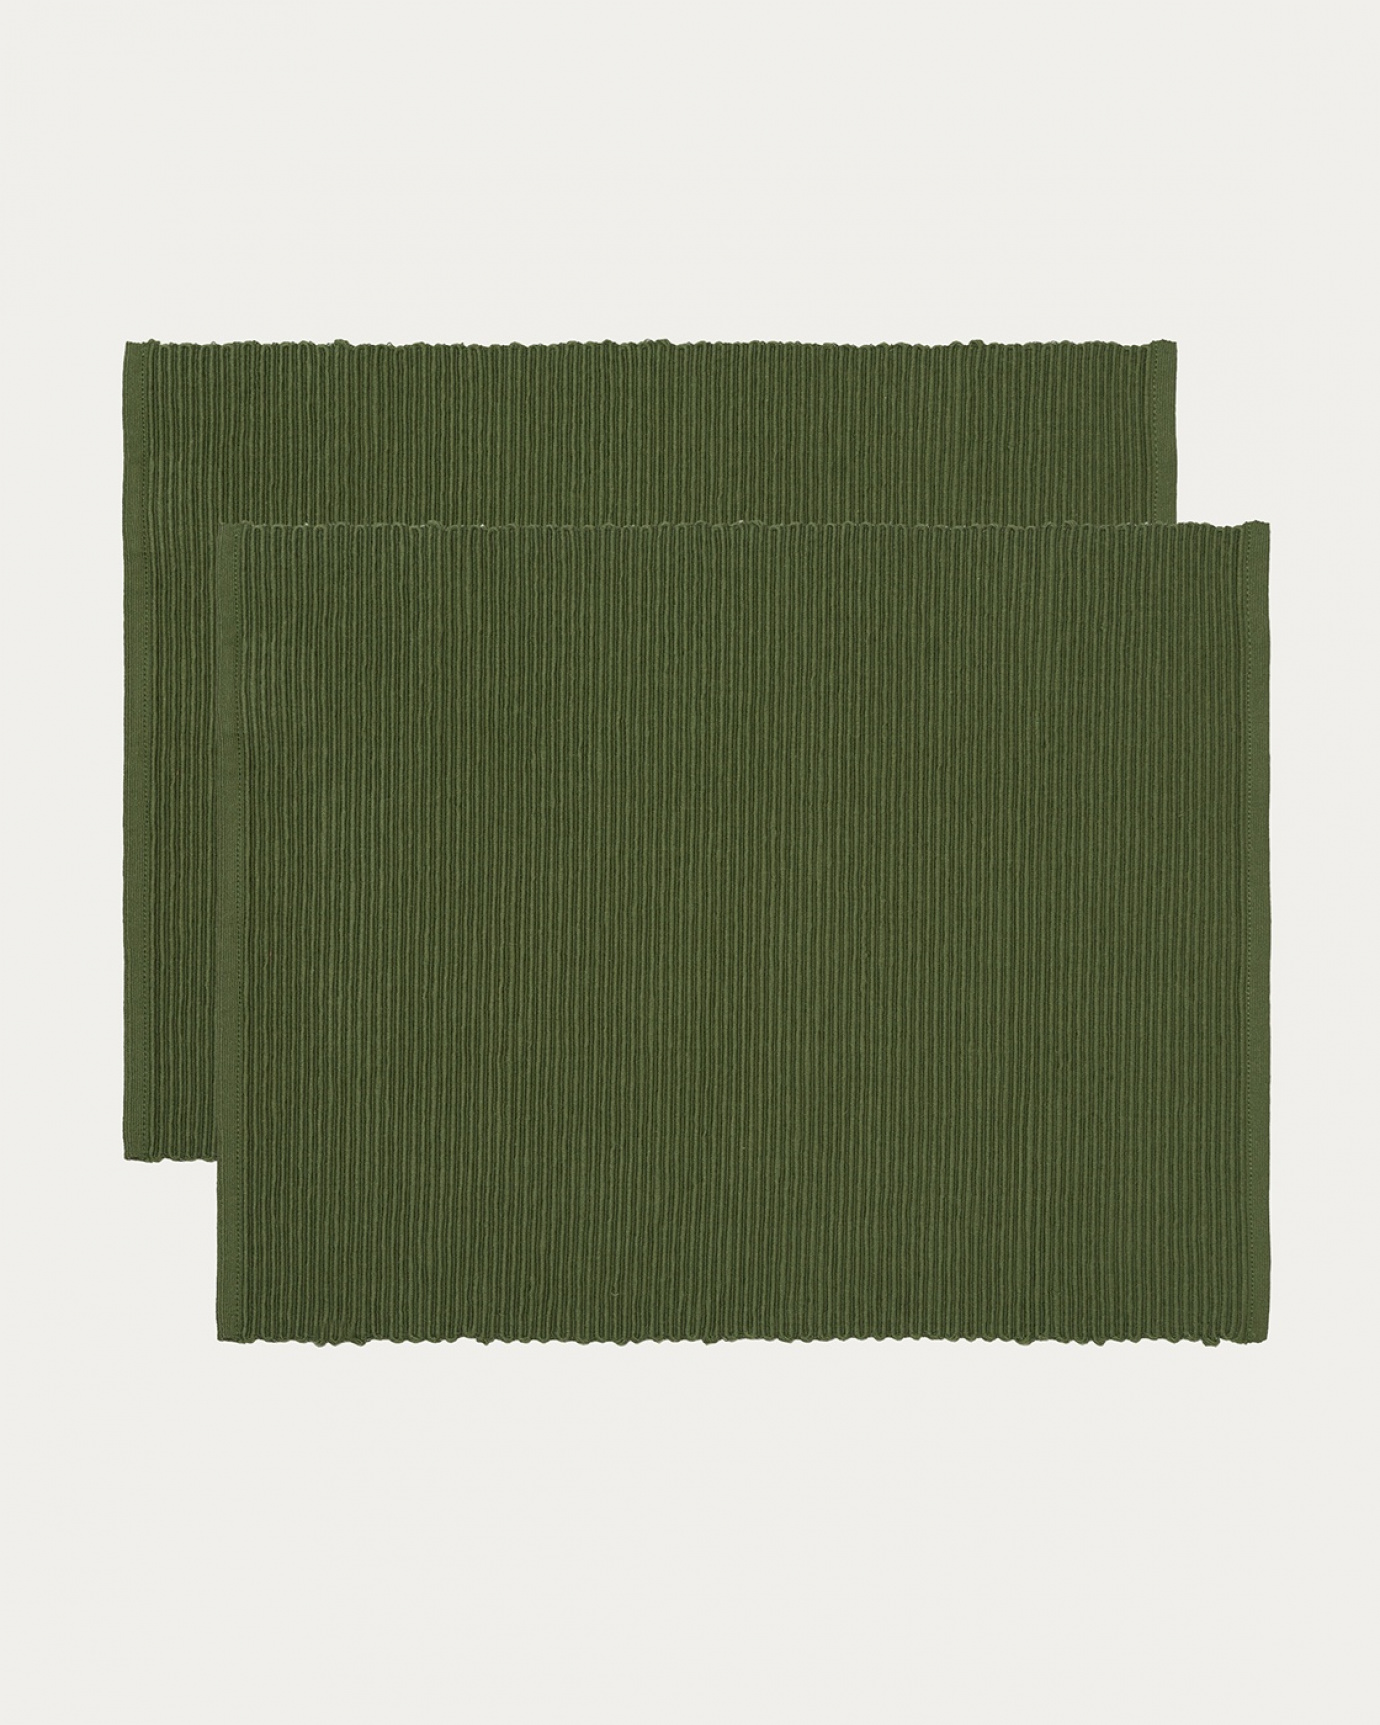 Immagine prodotto verde oliva scuro tovaglietta UNI in morbido cotone a costine di qualità di LINUM DESIGN. Dimensioni 35x46 cm e venduto in 2-pezzi.